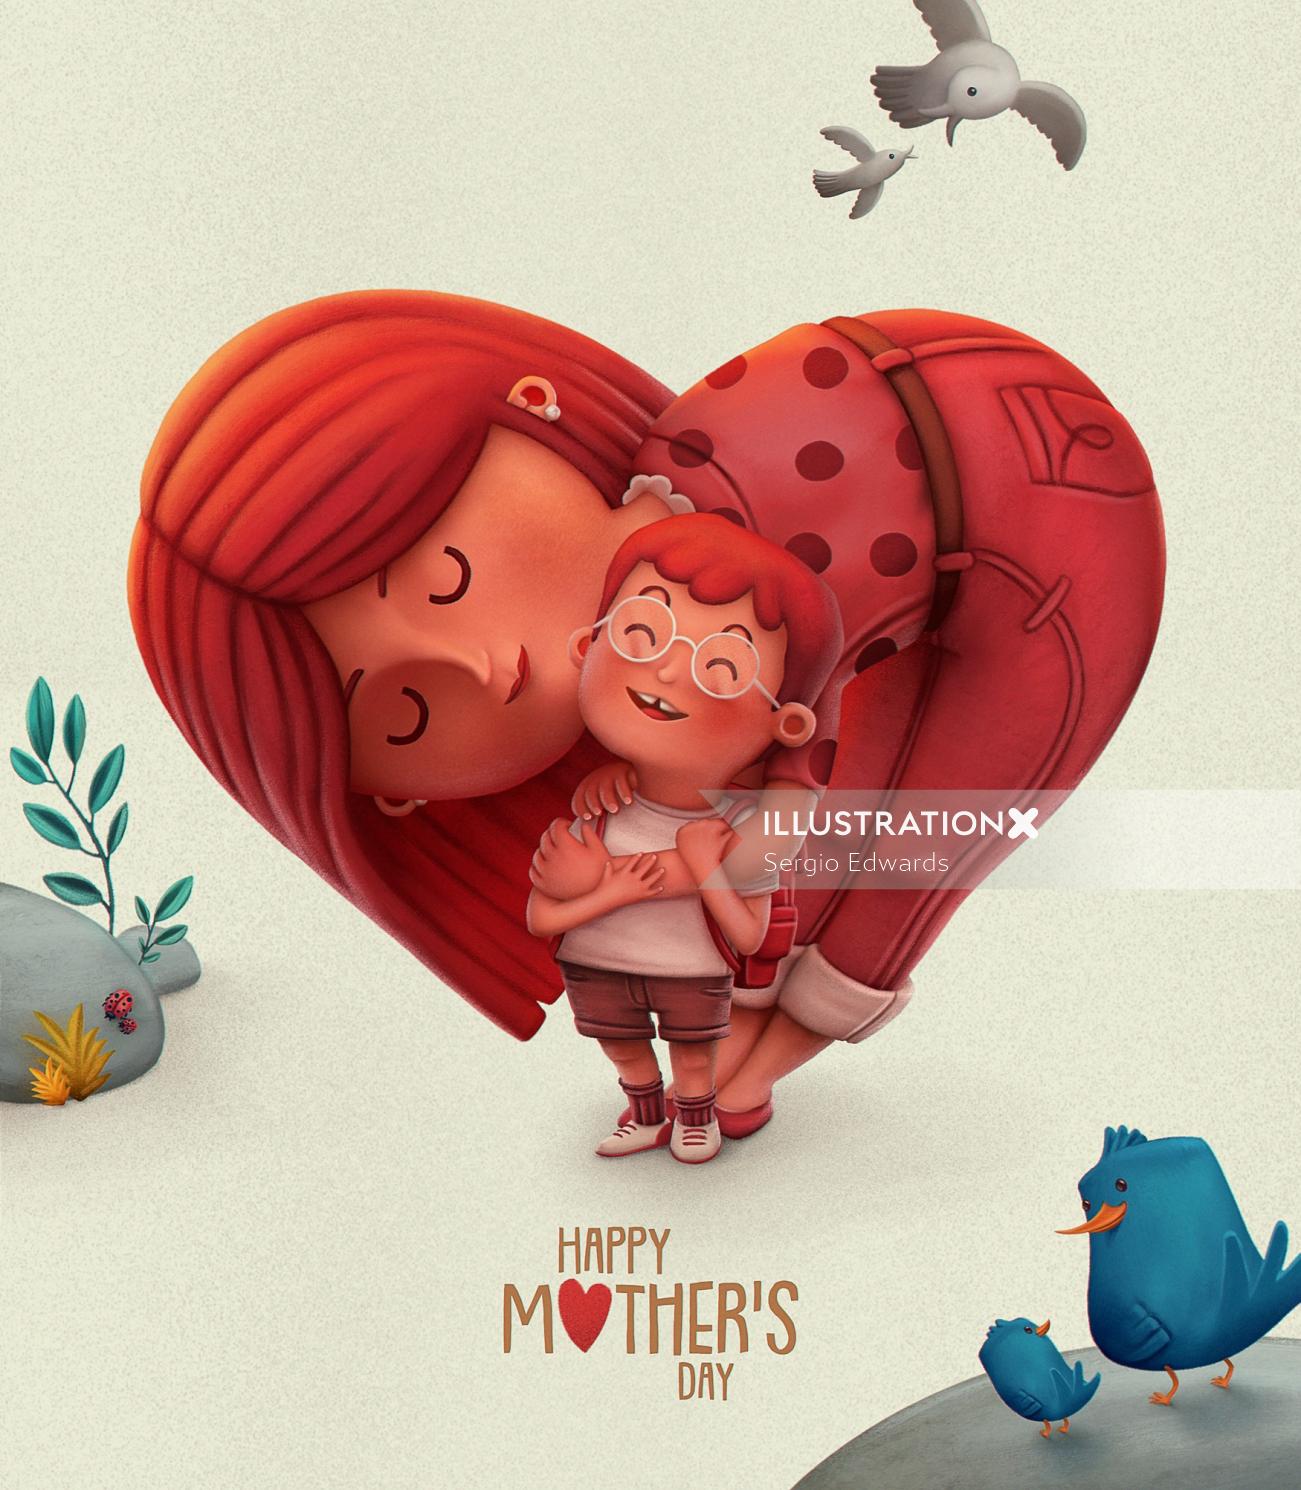 セルジオエドワーズによる幸せな母の日のグラフィックポスター